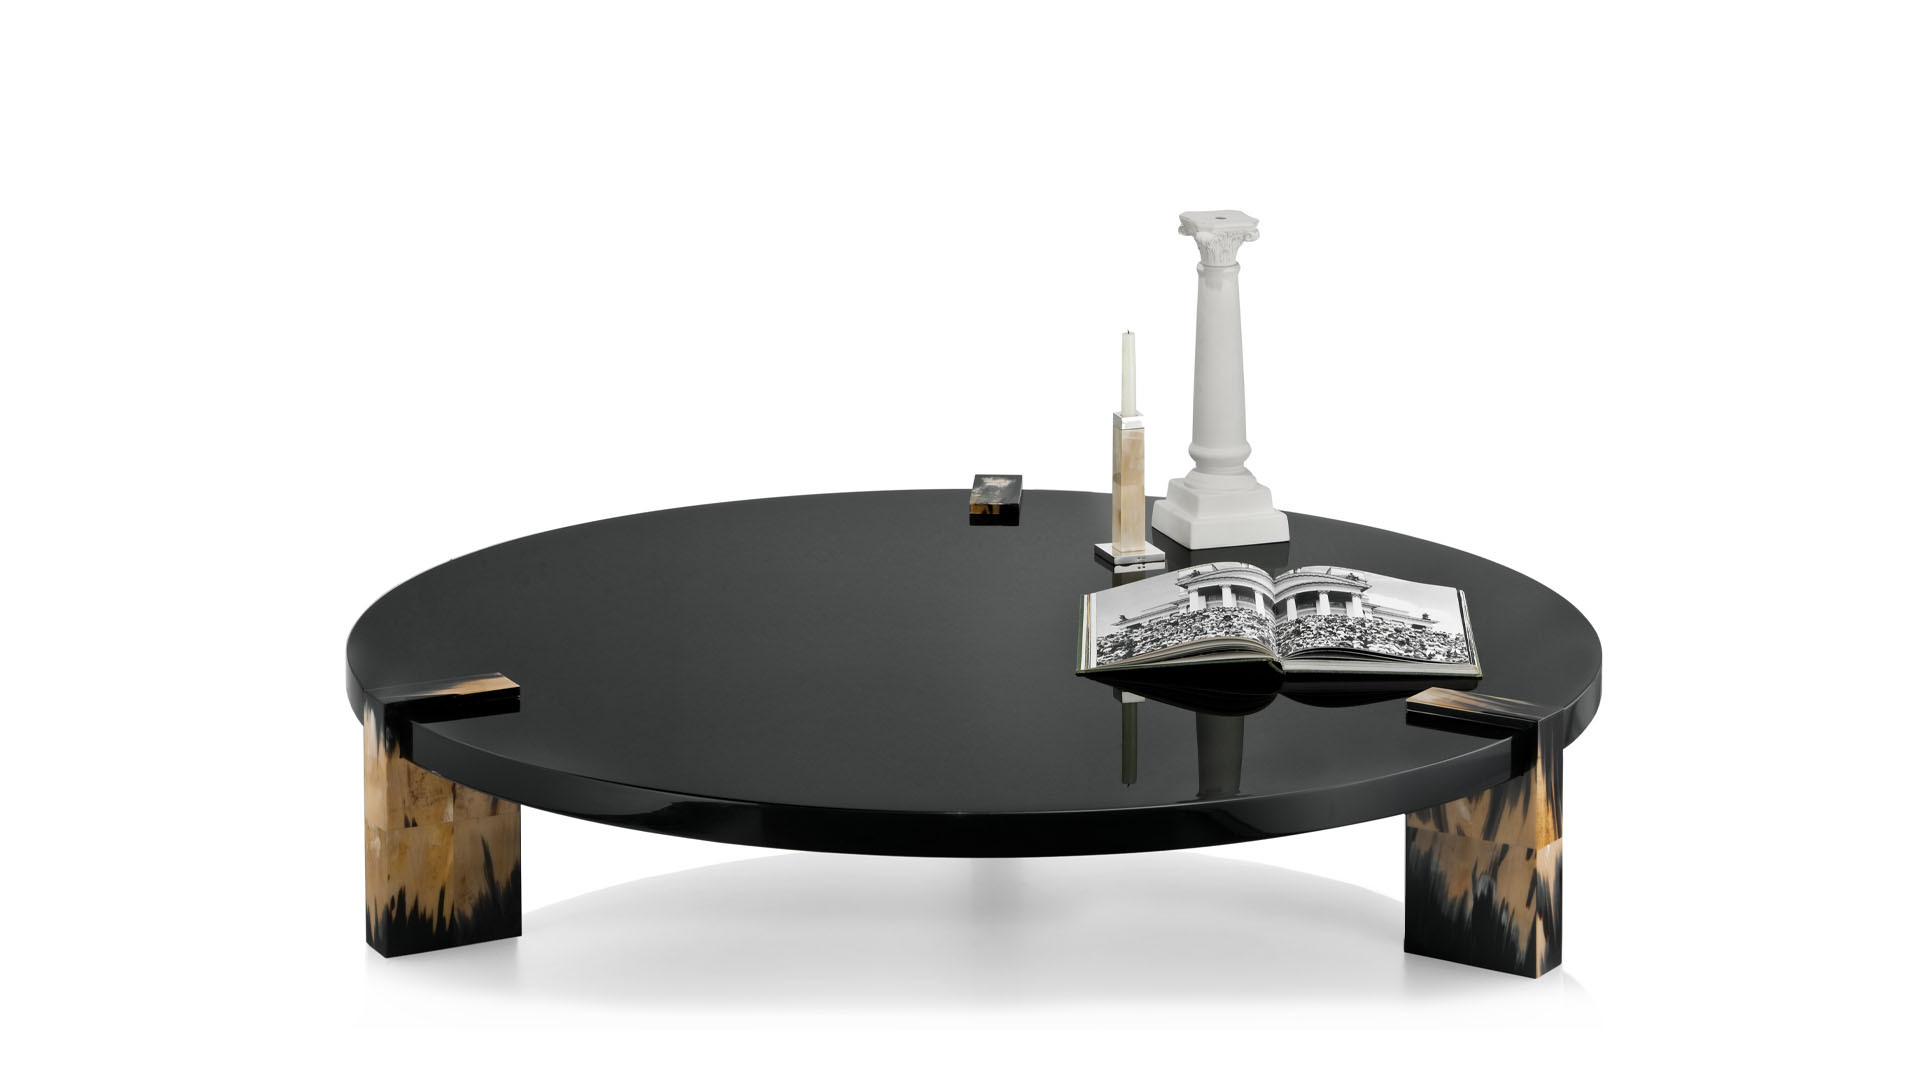 Tavoli e consolle - Paestum tavolo basso in legno laccato nero - copertina - Arcahorn